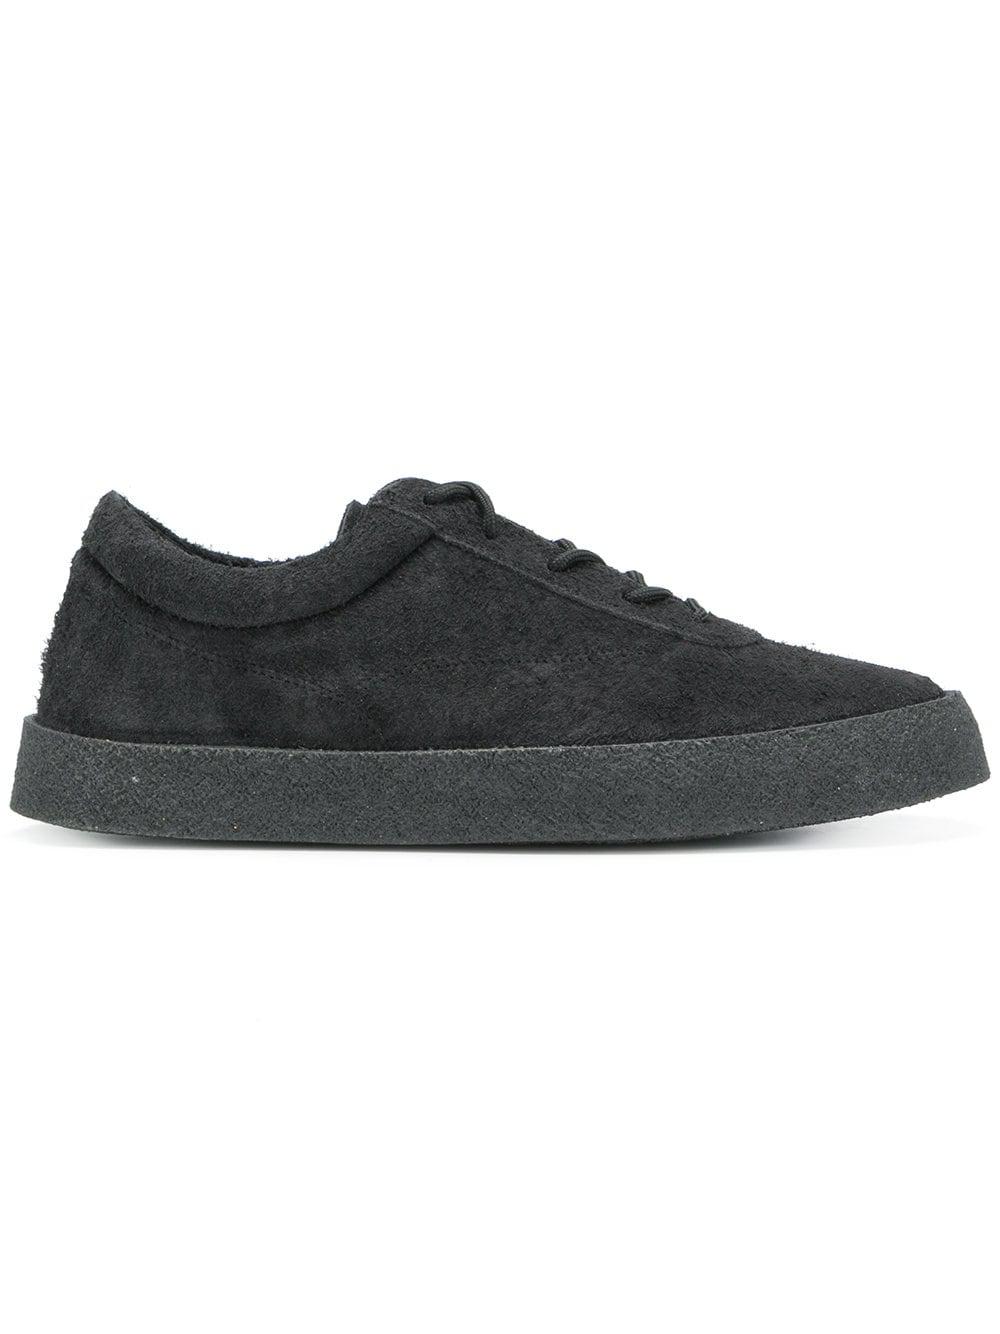 Yeezy Suede Season 6 Crepe Sneakers in Black for Men | Lyst UK